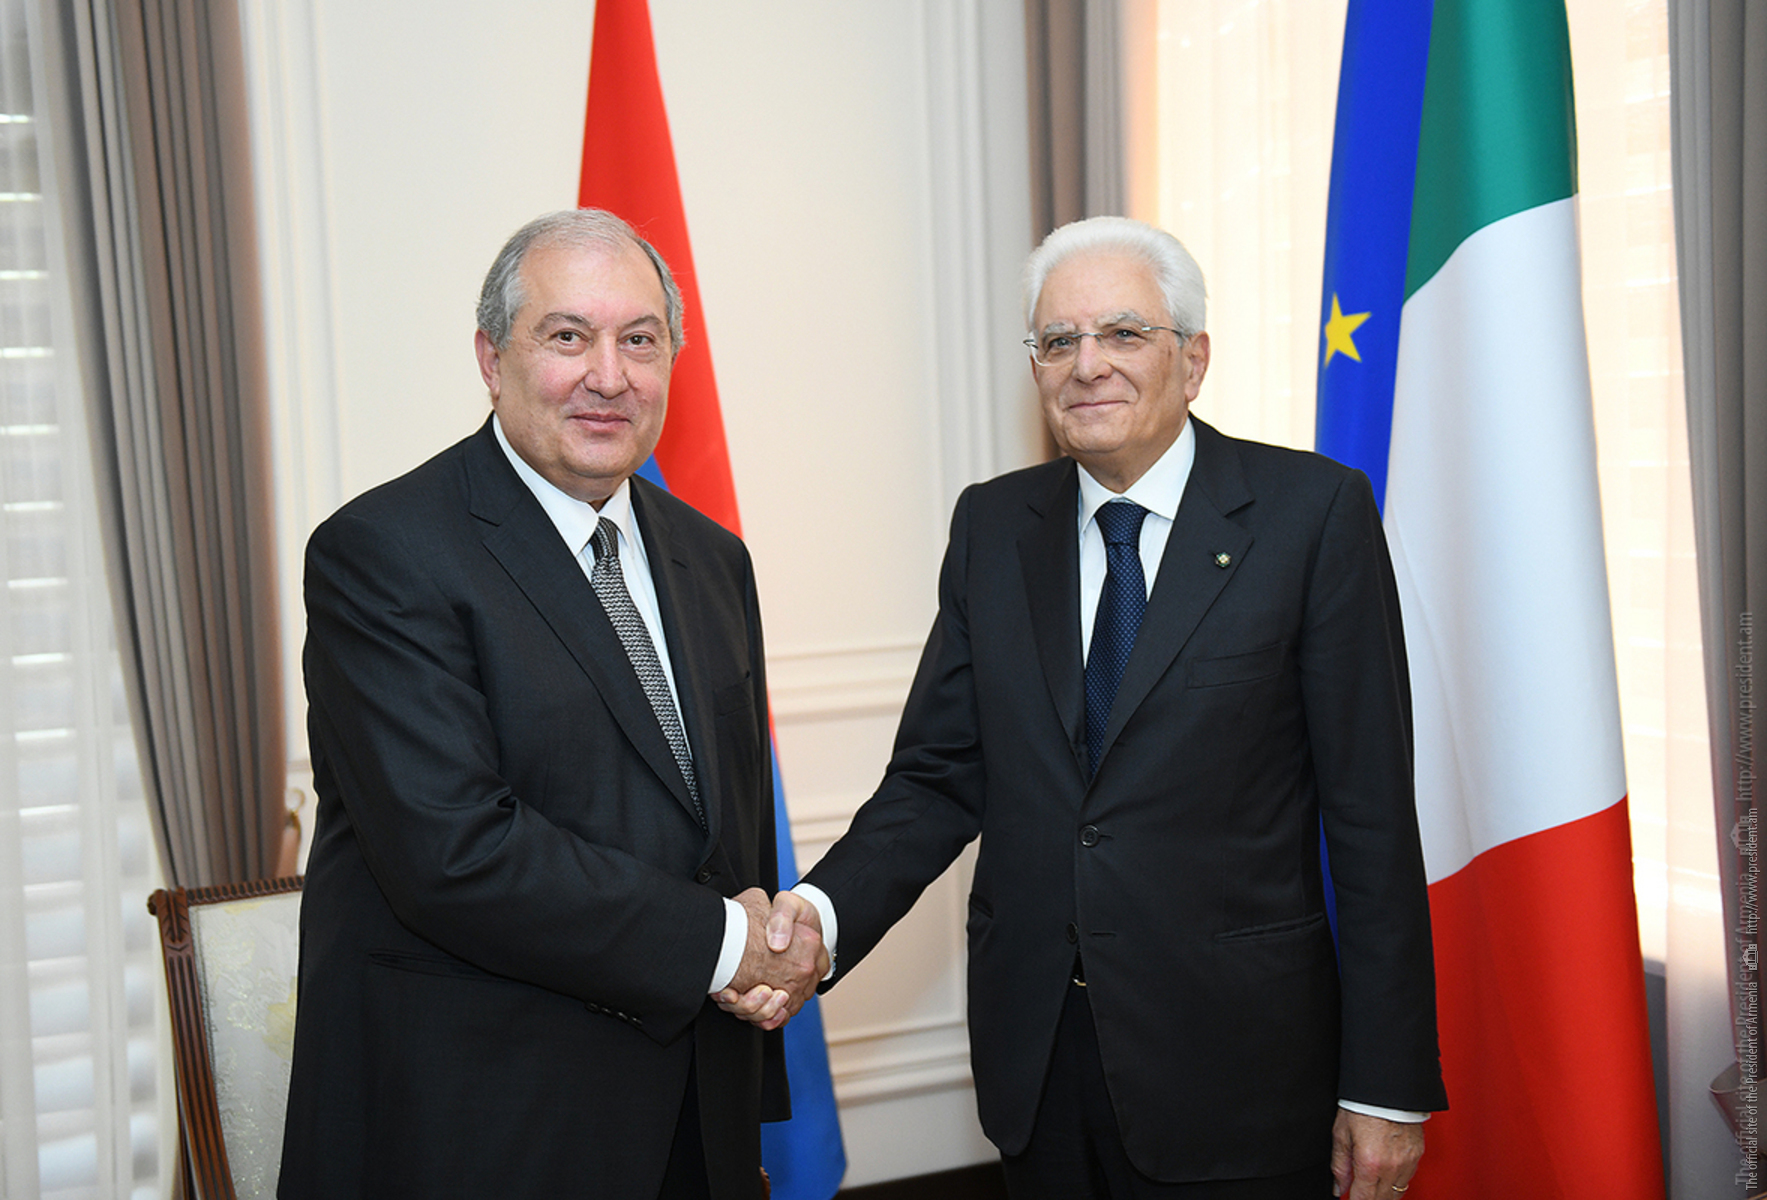 Նախագահ Արմեն Սարգսյանը հեռախոսազրույց է ունեցել Իտալիայի նախագահ Սերջիո Մատարելլայի հետ